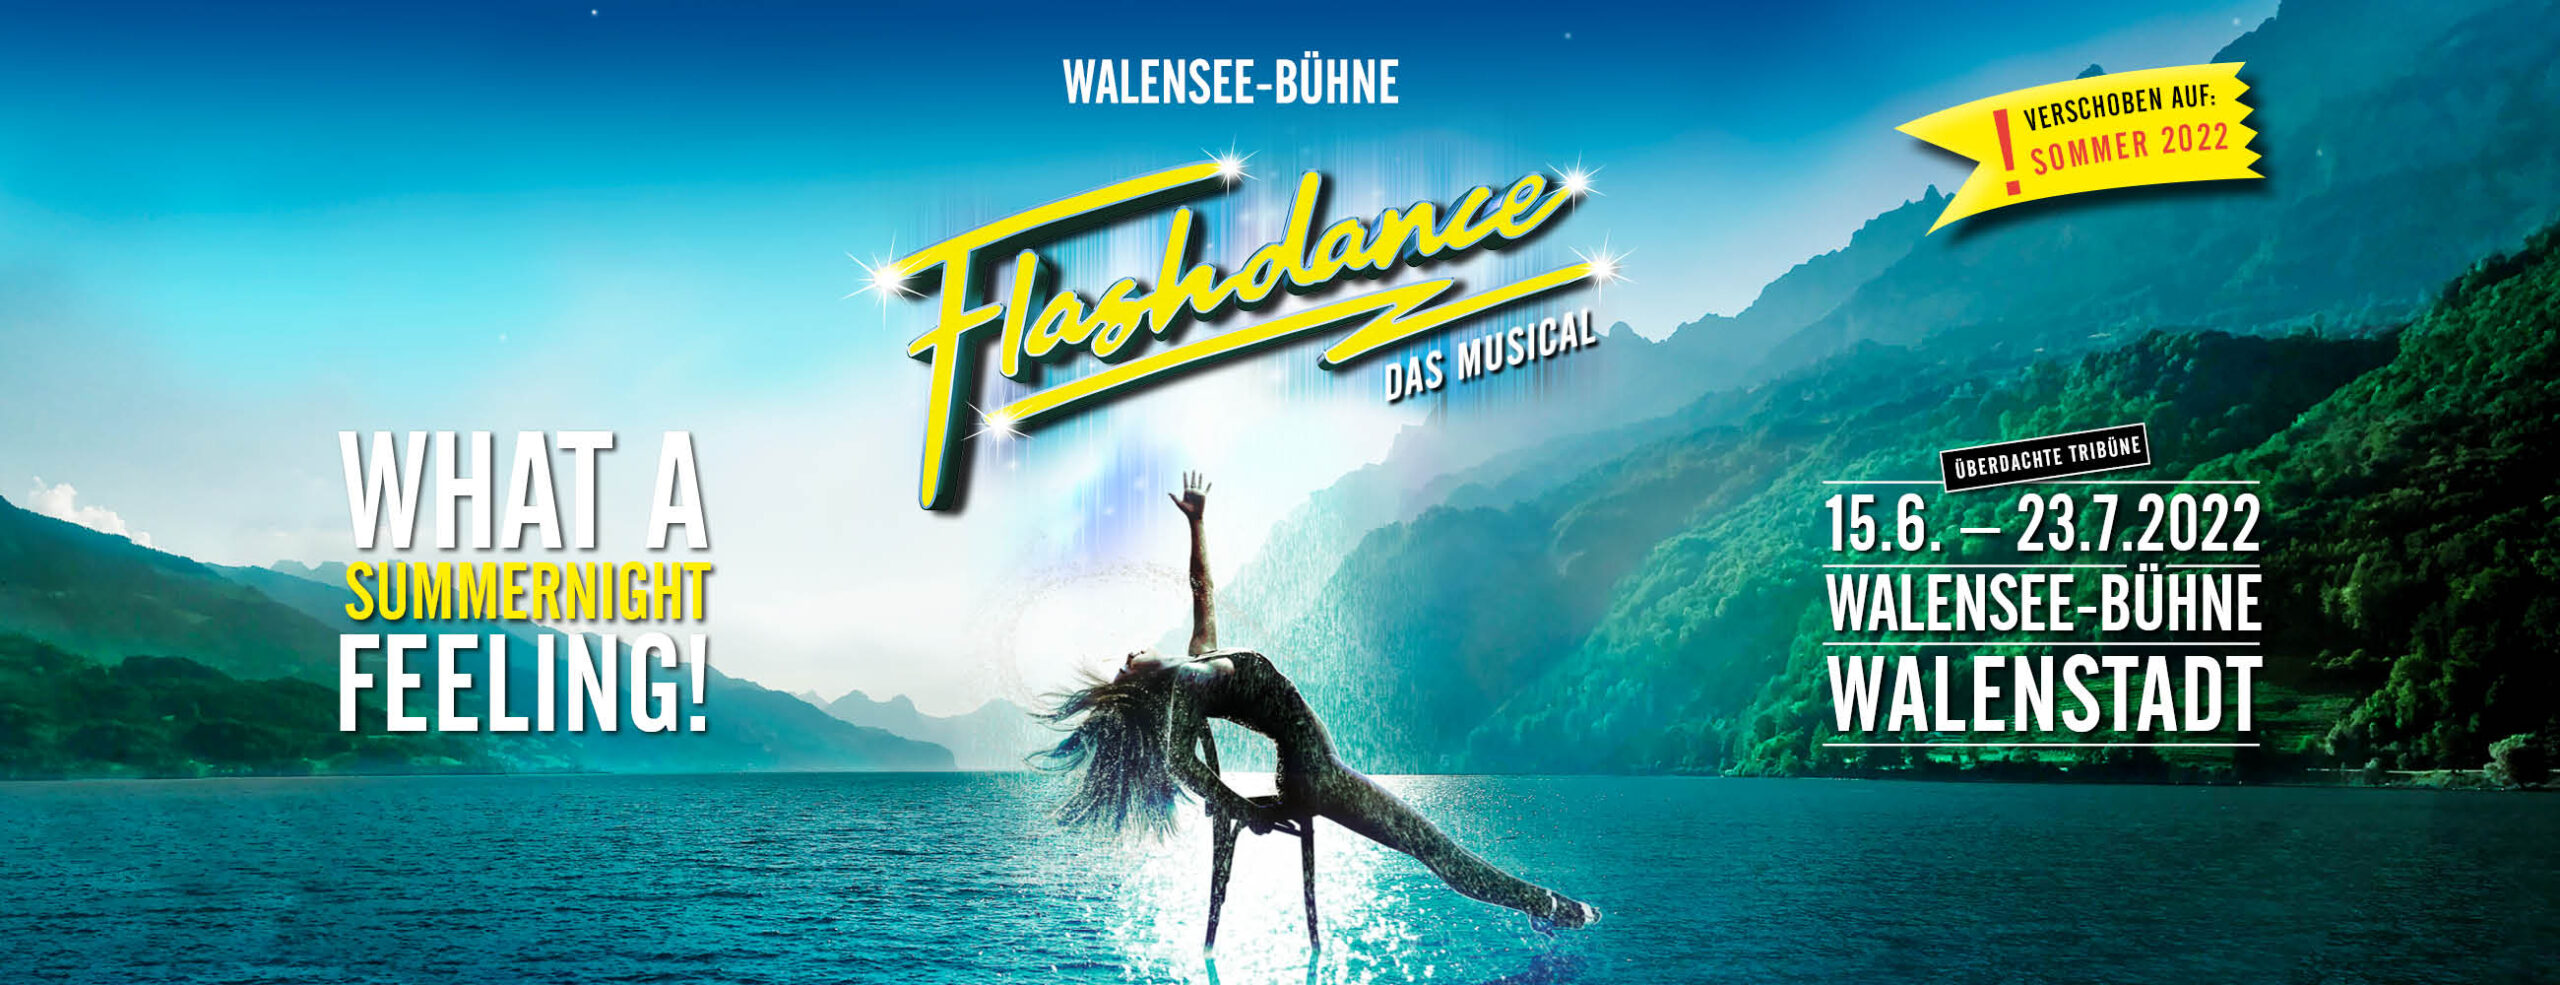 Flashdance - Das Musical wird auf 2022 verschoben: 15. Juni bis 23. Juli 2022 auf der Walensee-Bühne